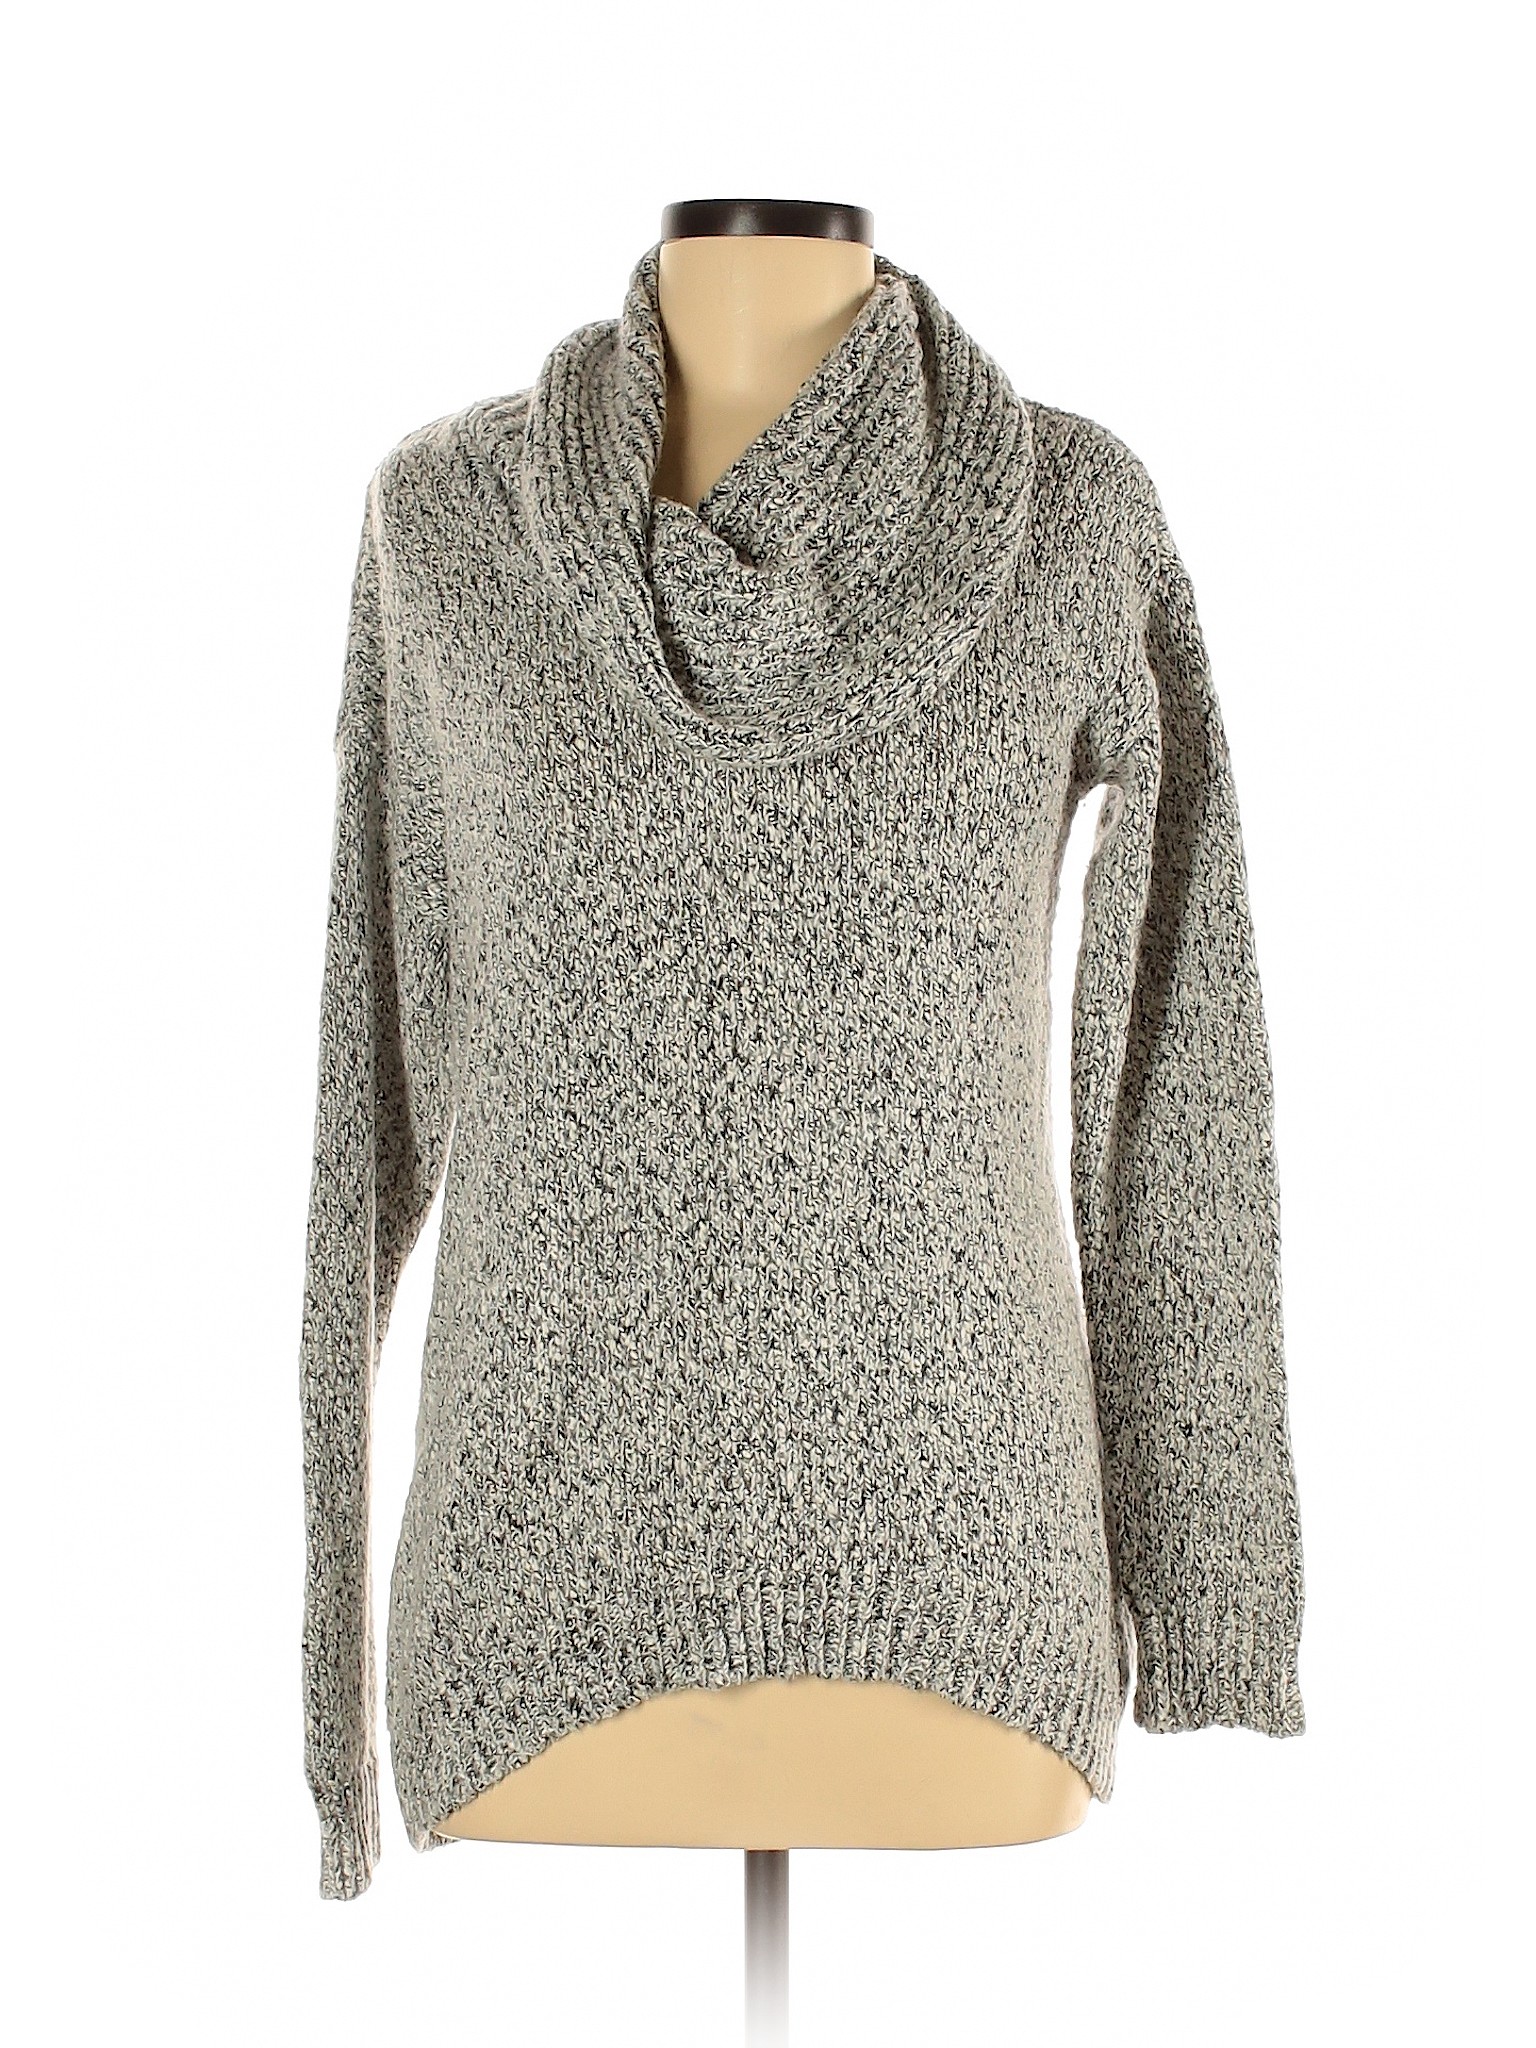 Calvin Klein Women Gray Pullover Sweater M | eBay